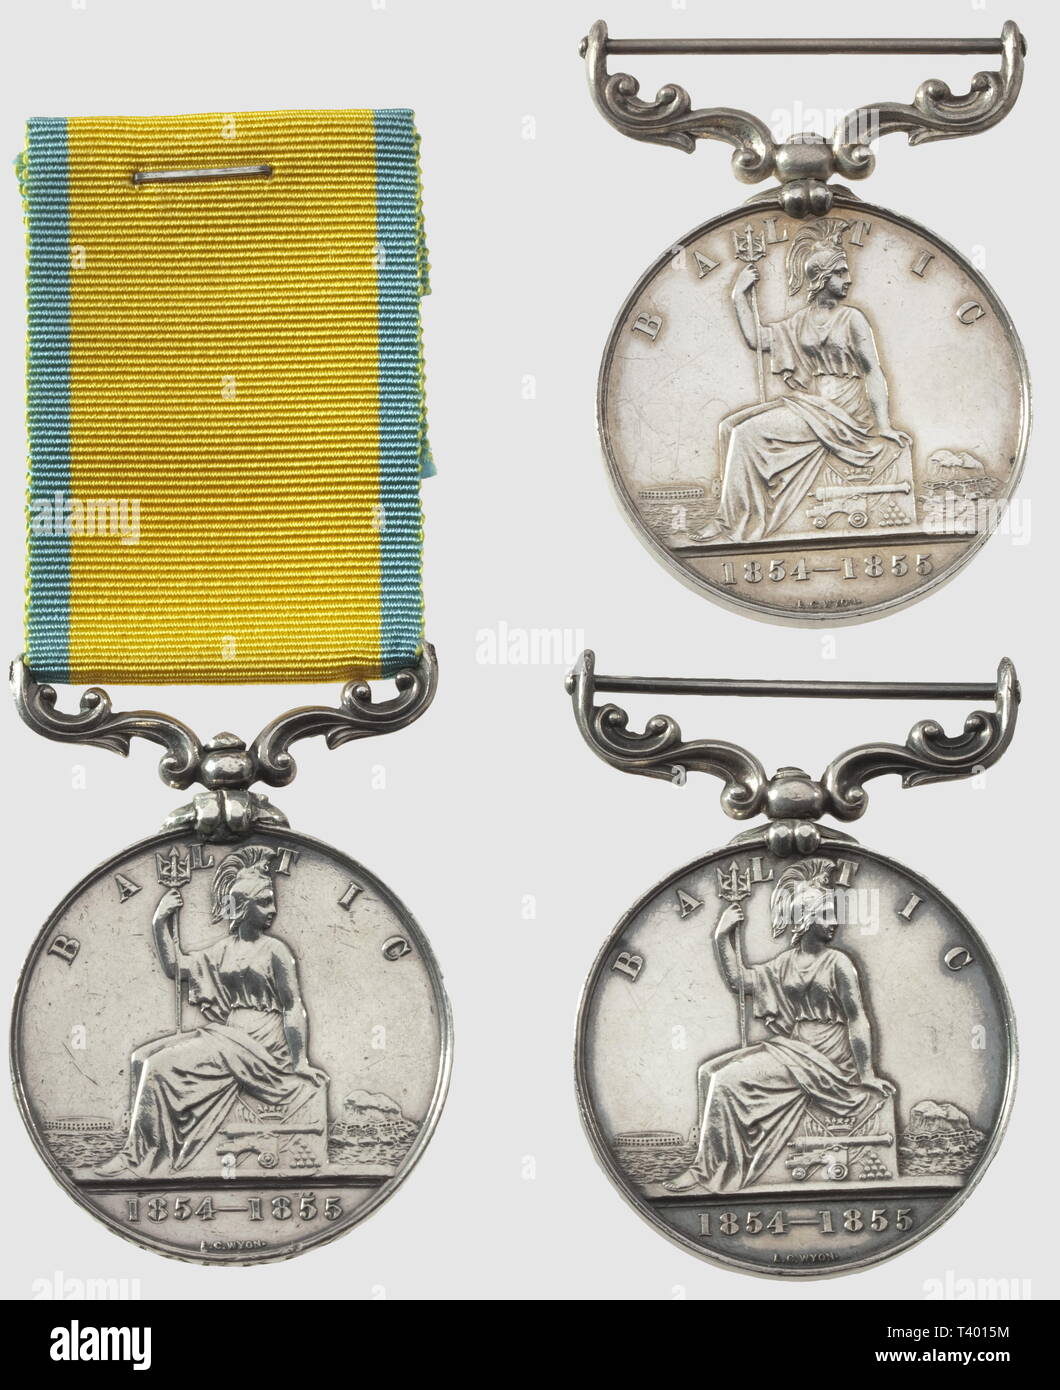 Trois Médailles de la "baltique" 1854-1855, du Graveur" L.C. Wyon', une attribuée' W. Starkey", deux sans Ruban, Additional-Rights - Clearance-Info - Not-Available Stockfoto